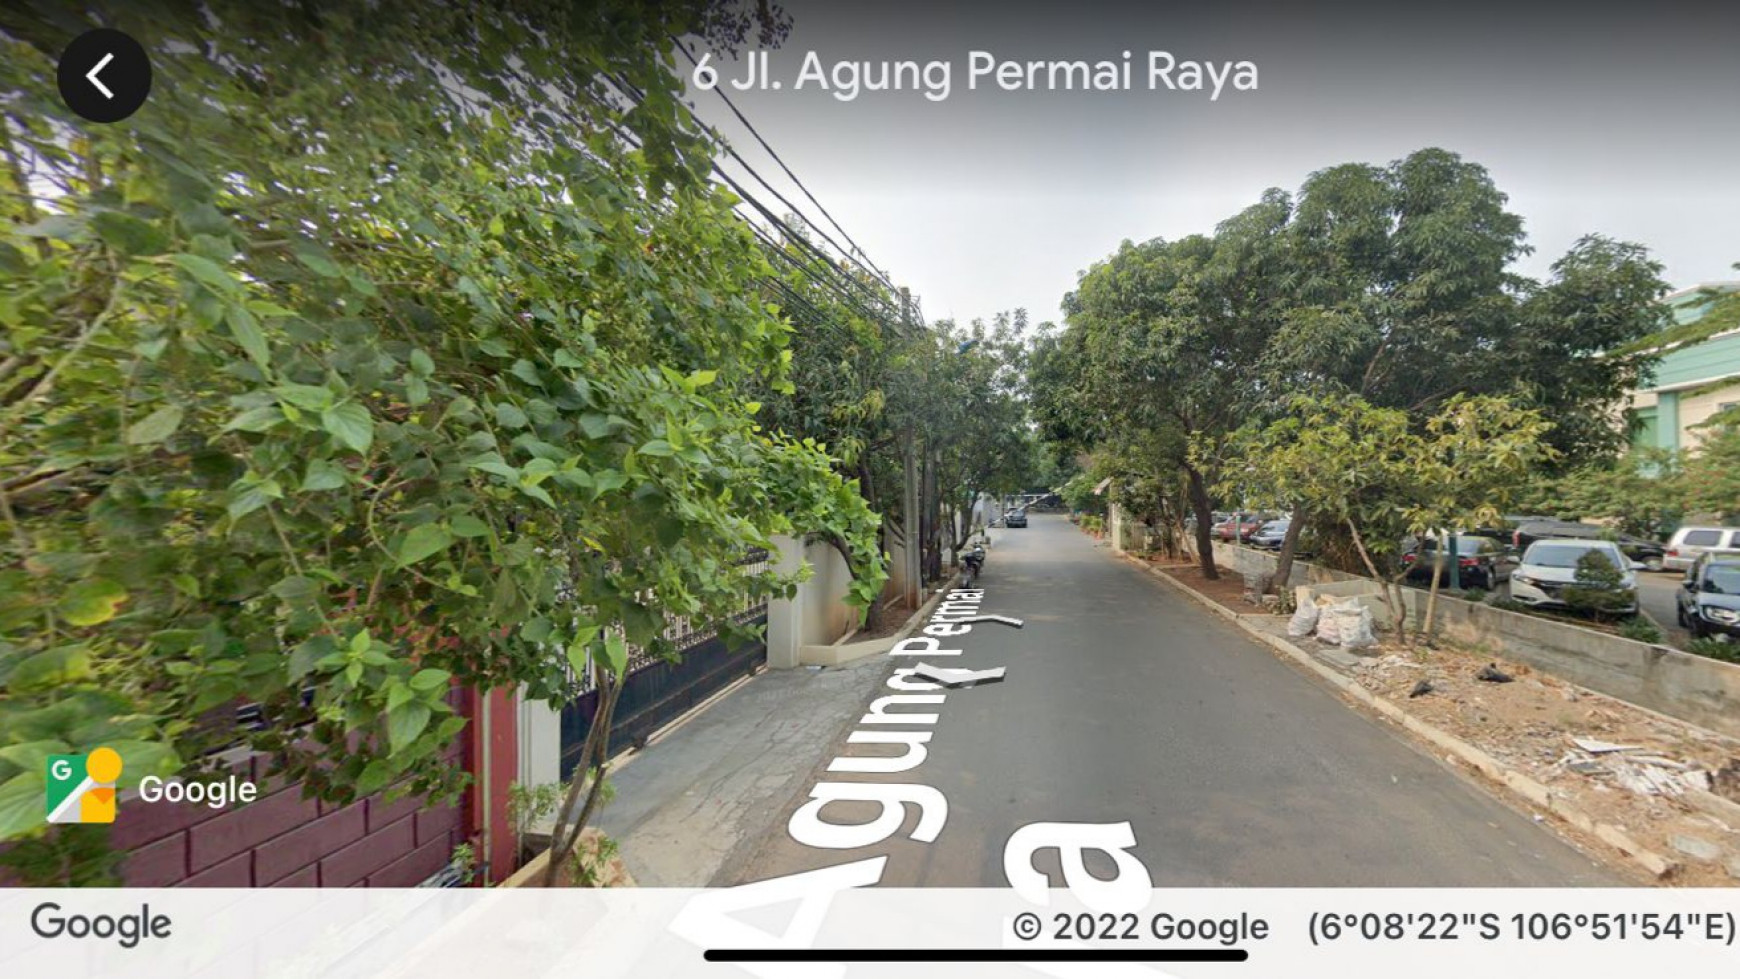 Dijual Tanah + Rumah tua di Jl. Sunter agung Permai Raya, Jakarta Utara